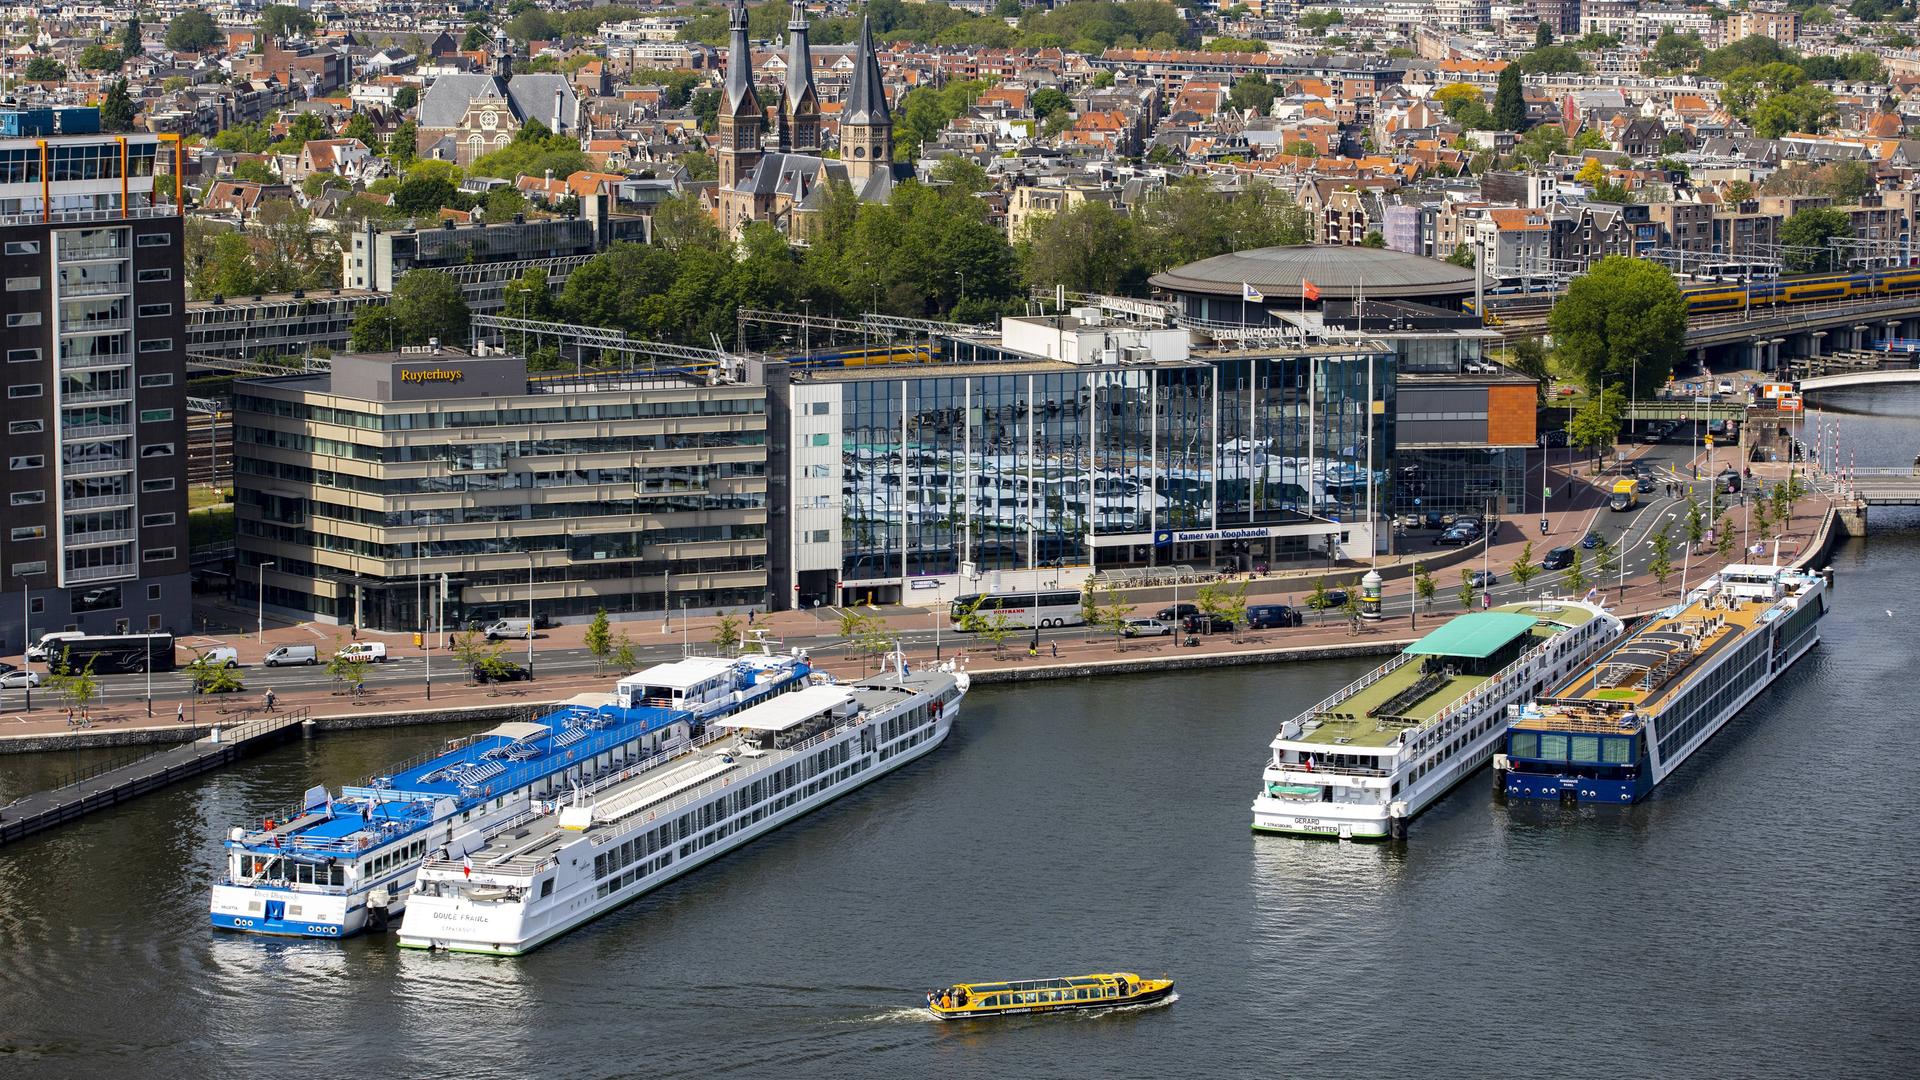 Amsterdam - Stadt will Hälfte der Flusskreuzfahrtschiffe verbannen